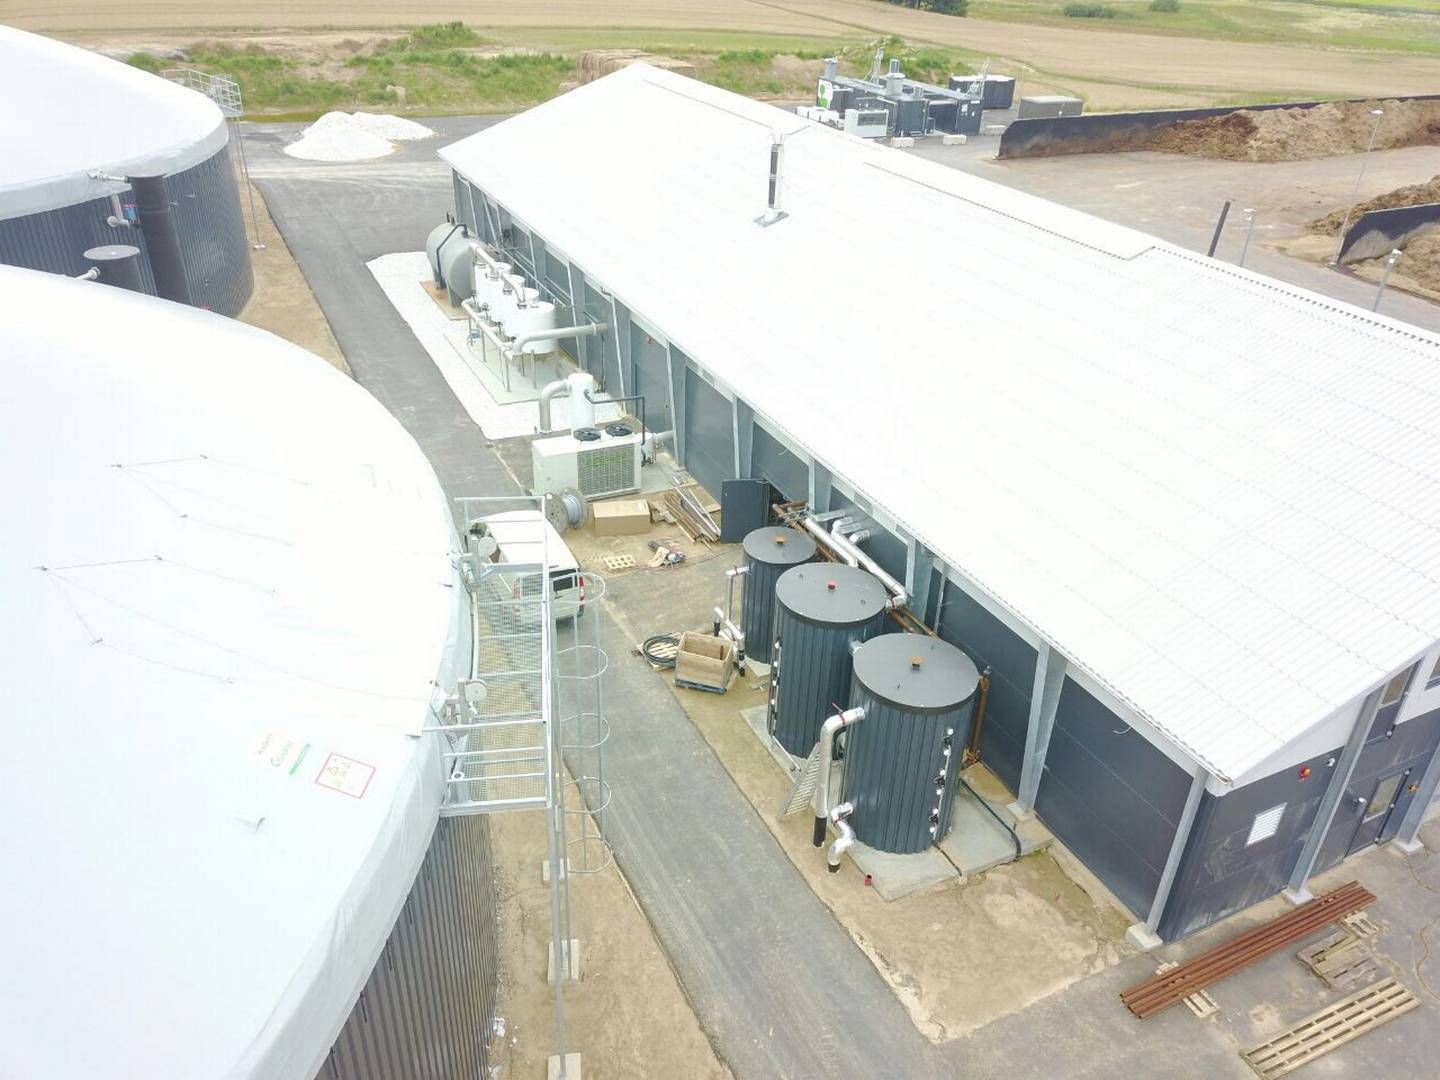 En udvidelse hos Sindal Biogas er blevet et hovedspørgsmål i et sagsanlæg mellem selskabet og det statslige gasselskab Evida. | Photo: Dbc Invest / Pr